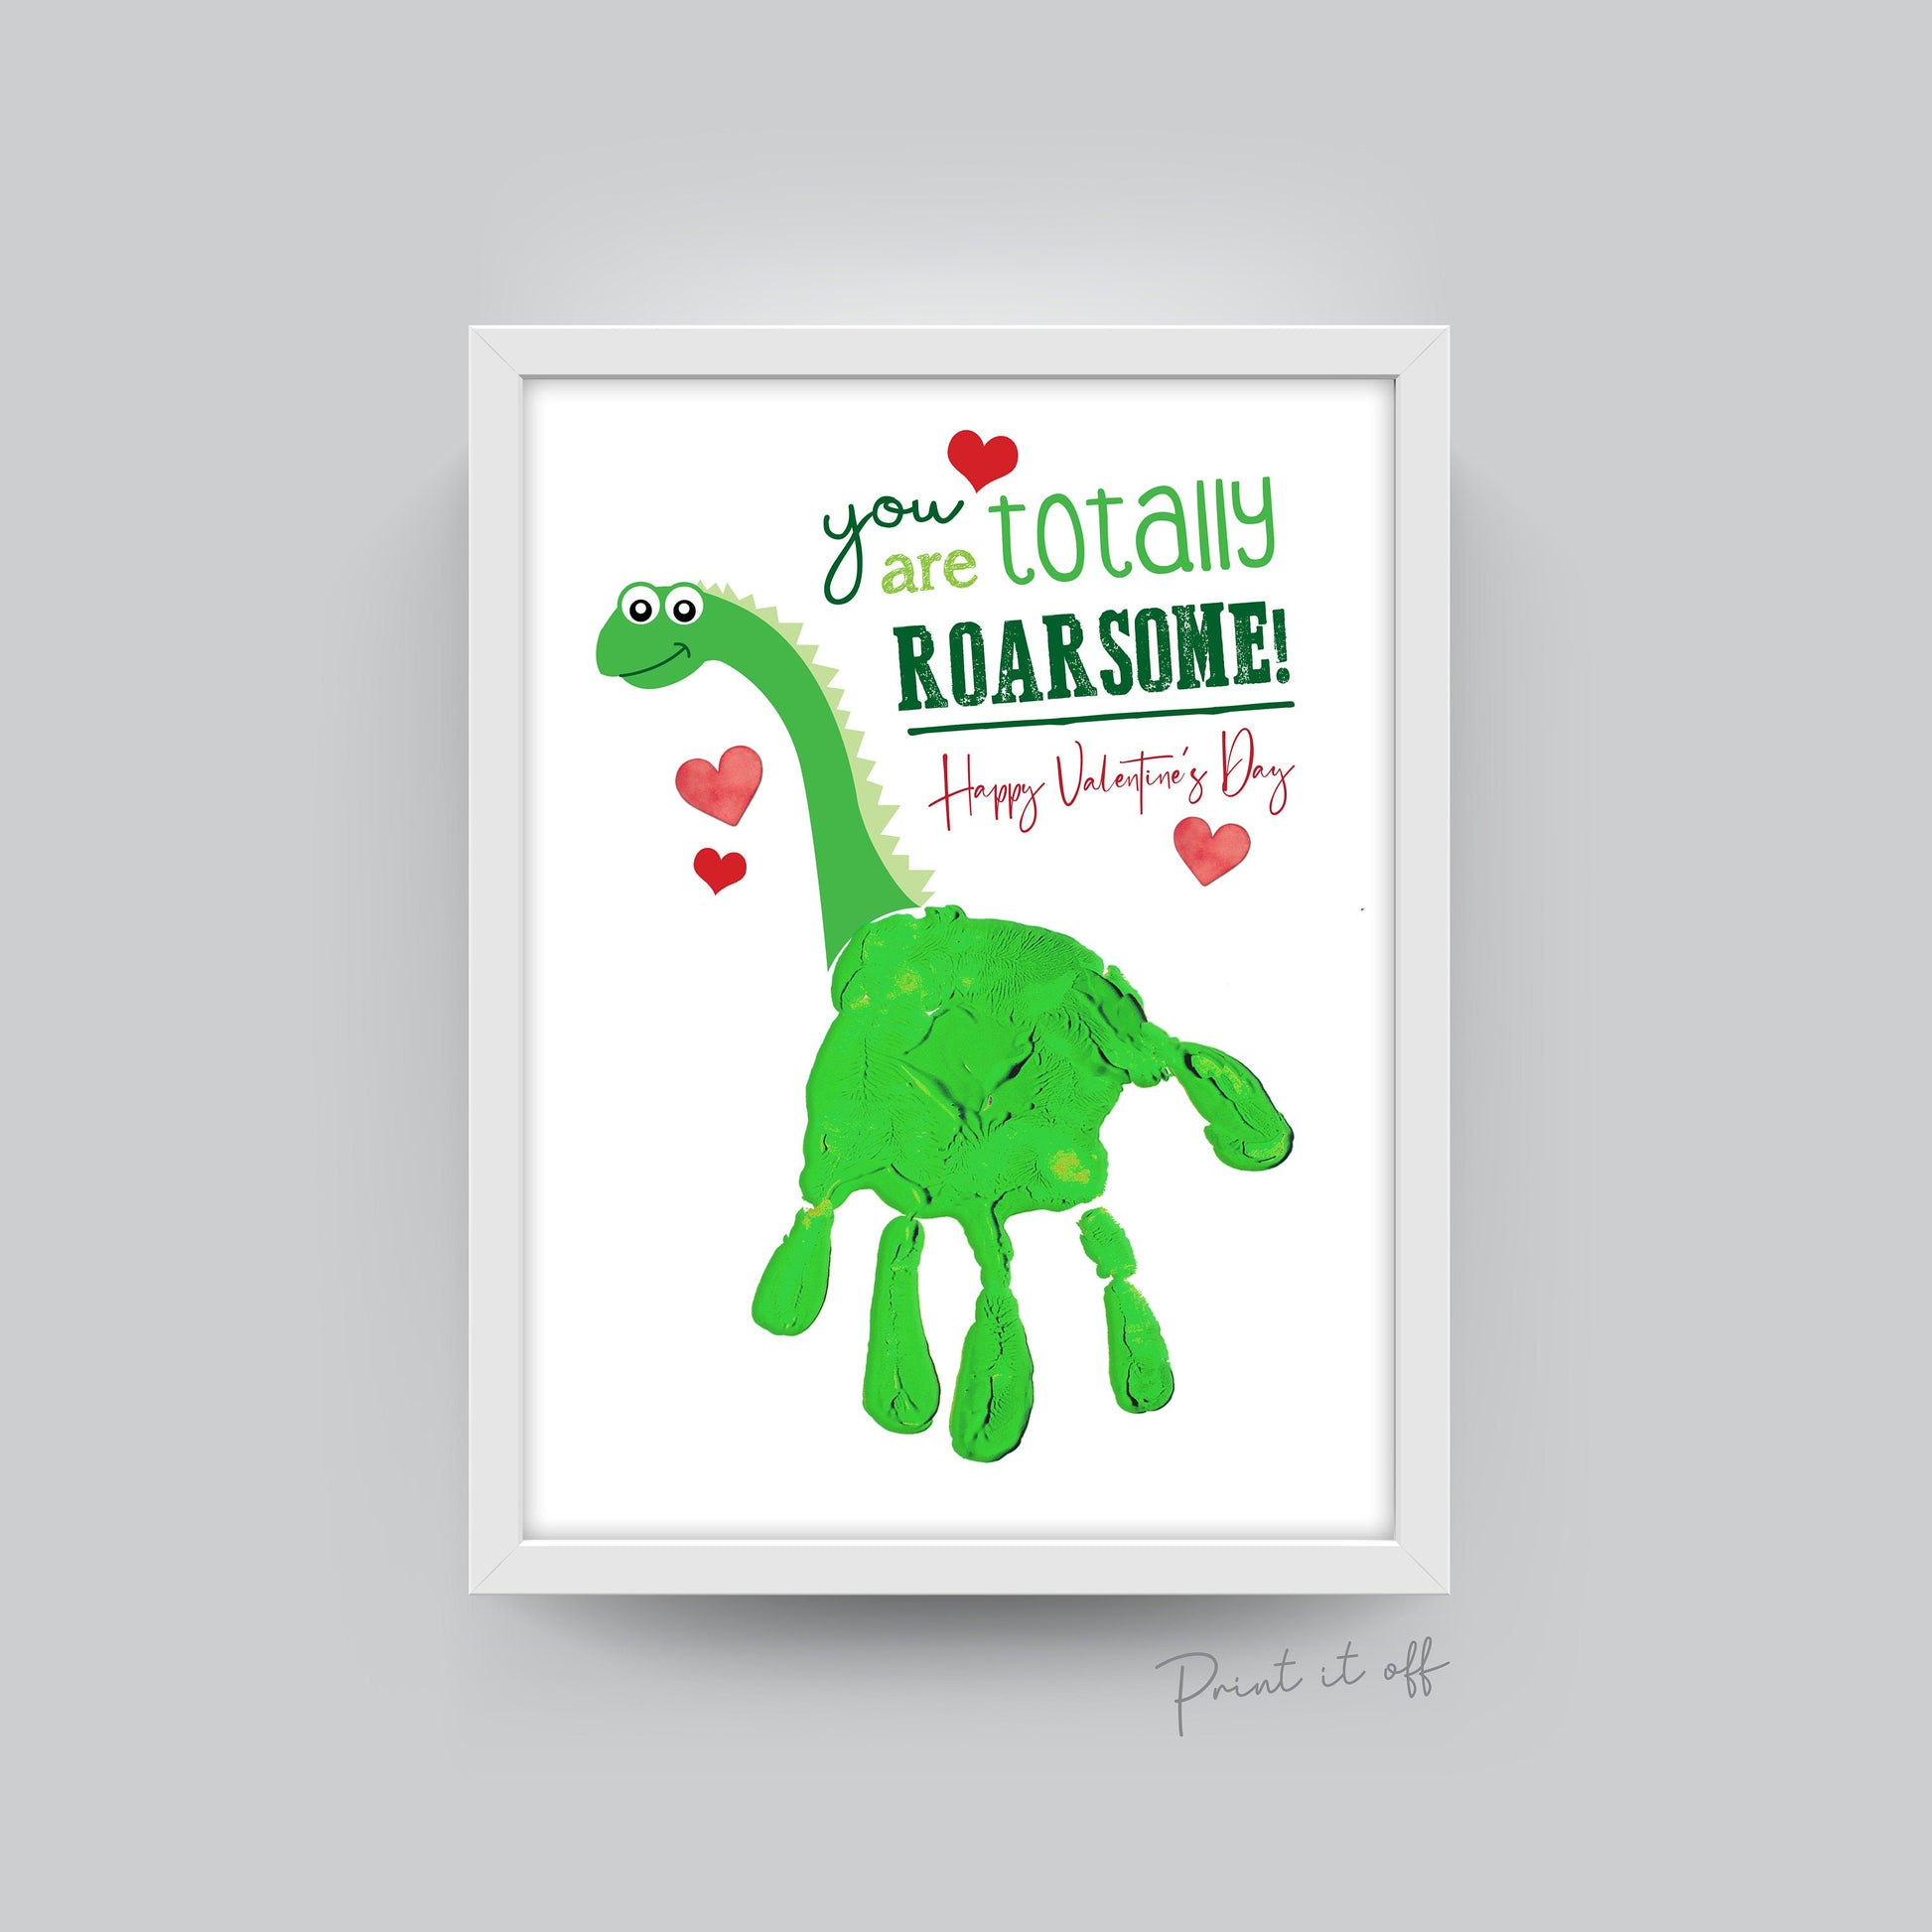 You're Roarsome!  Dinosaur cards, Cards handmade, Original card